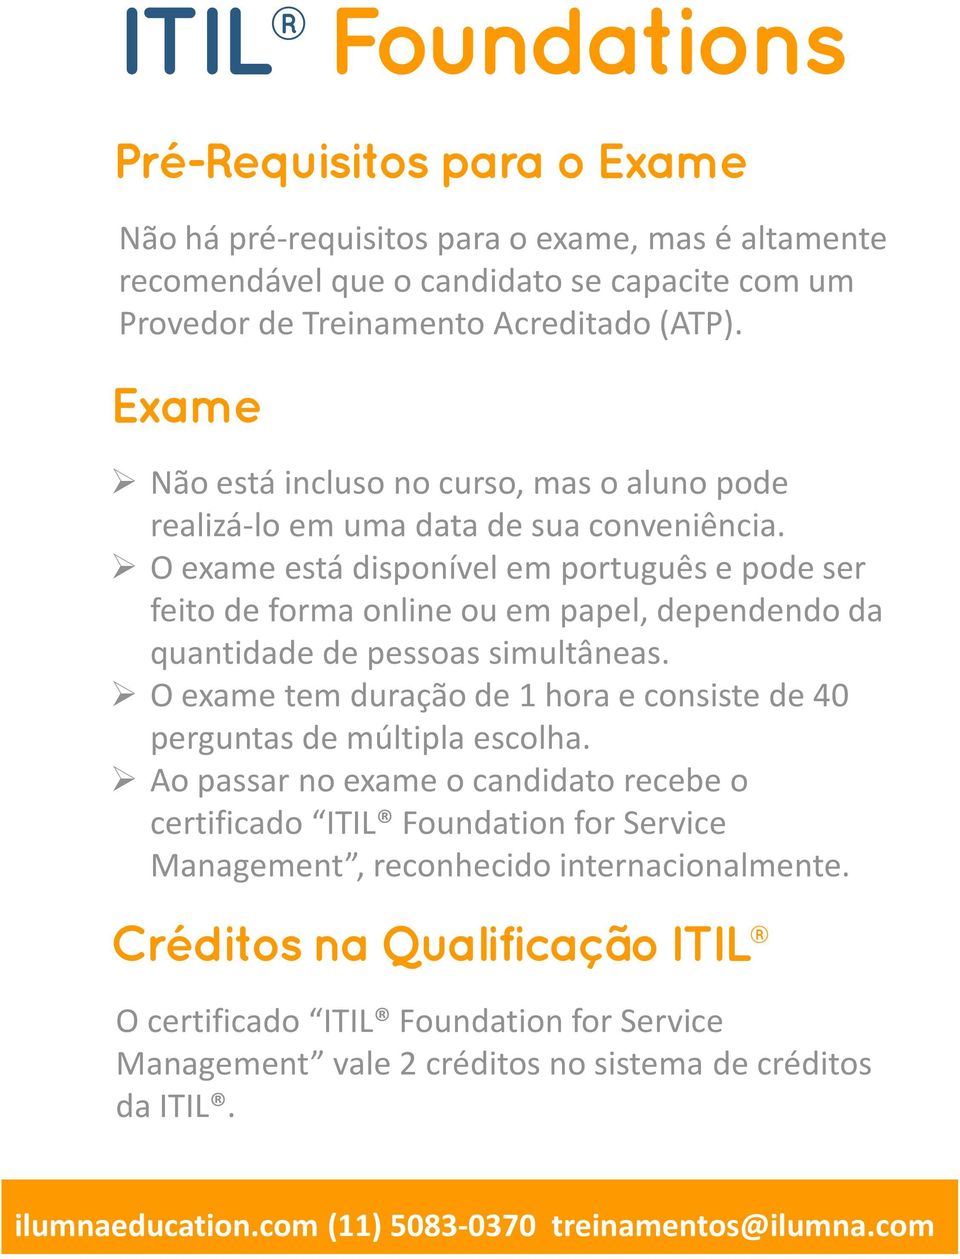 O exame está disponível em português e pode ser feito de forma online ou em papel, dependendo da quantidade de pessoas simultâneas.